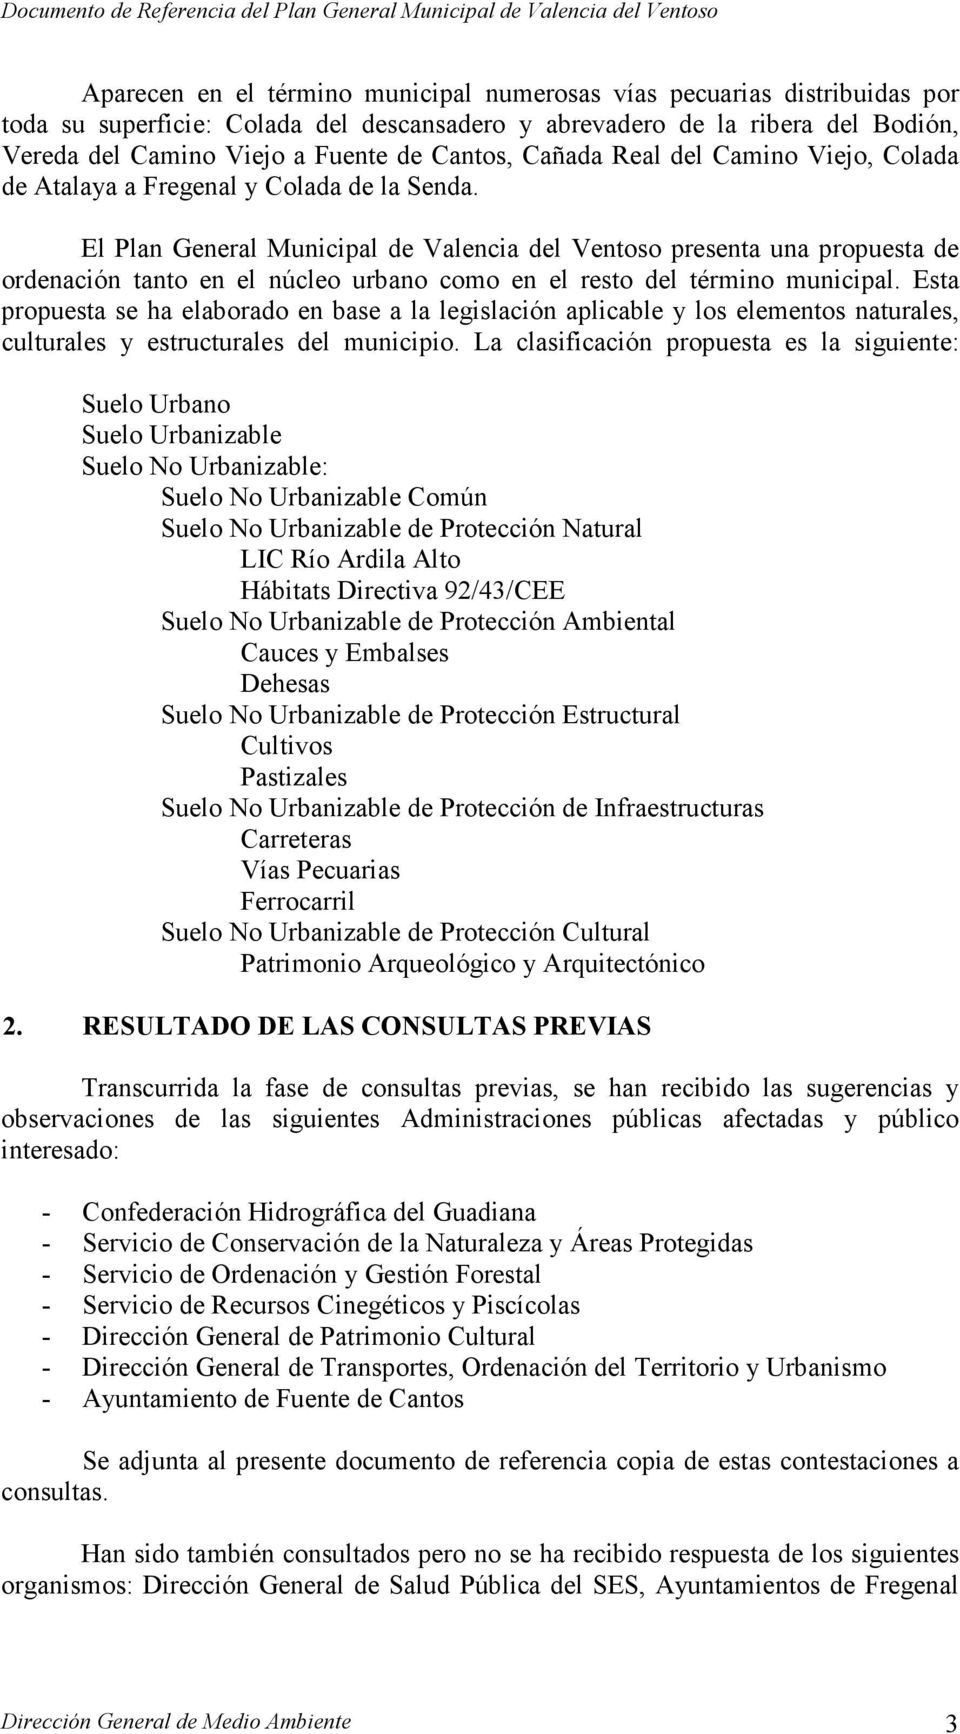 El Plan General Municipal de Valencia del Ventoso presenta una propuesta de ordenación tanto en el núcleo urbano como en el resto del término municipal.